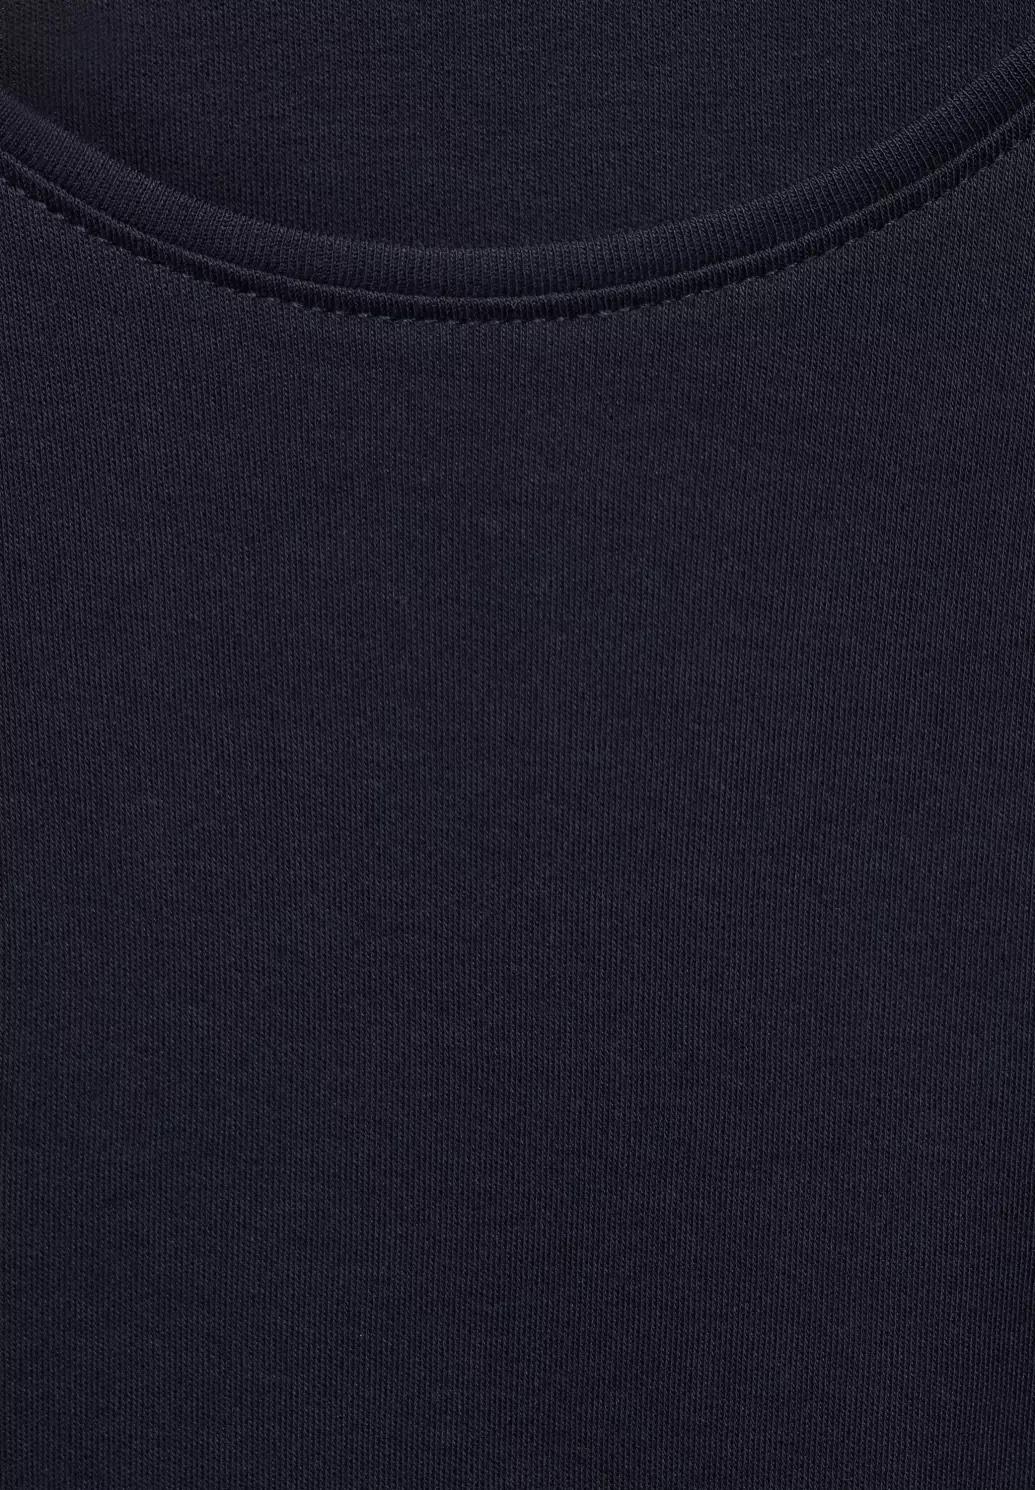 CECIL jednofarebné tričko, štýl LENA, modrá